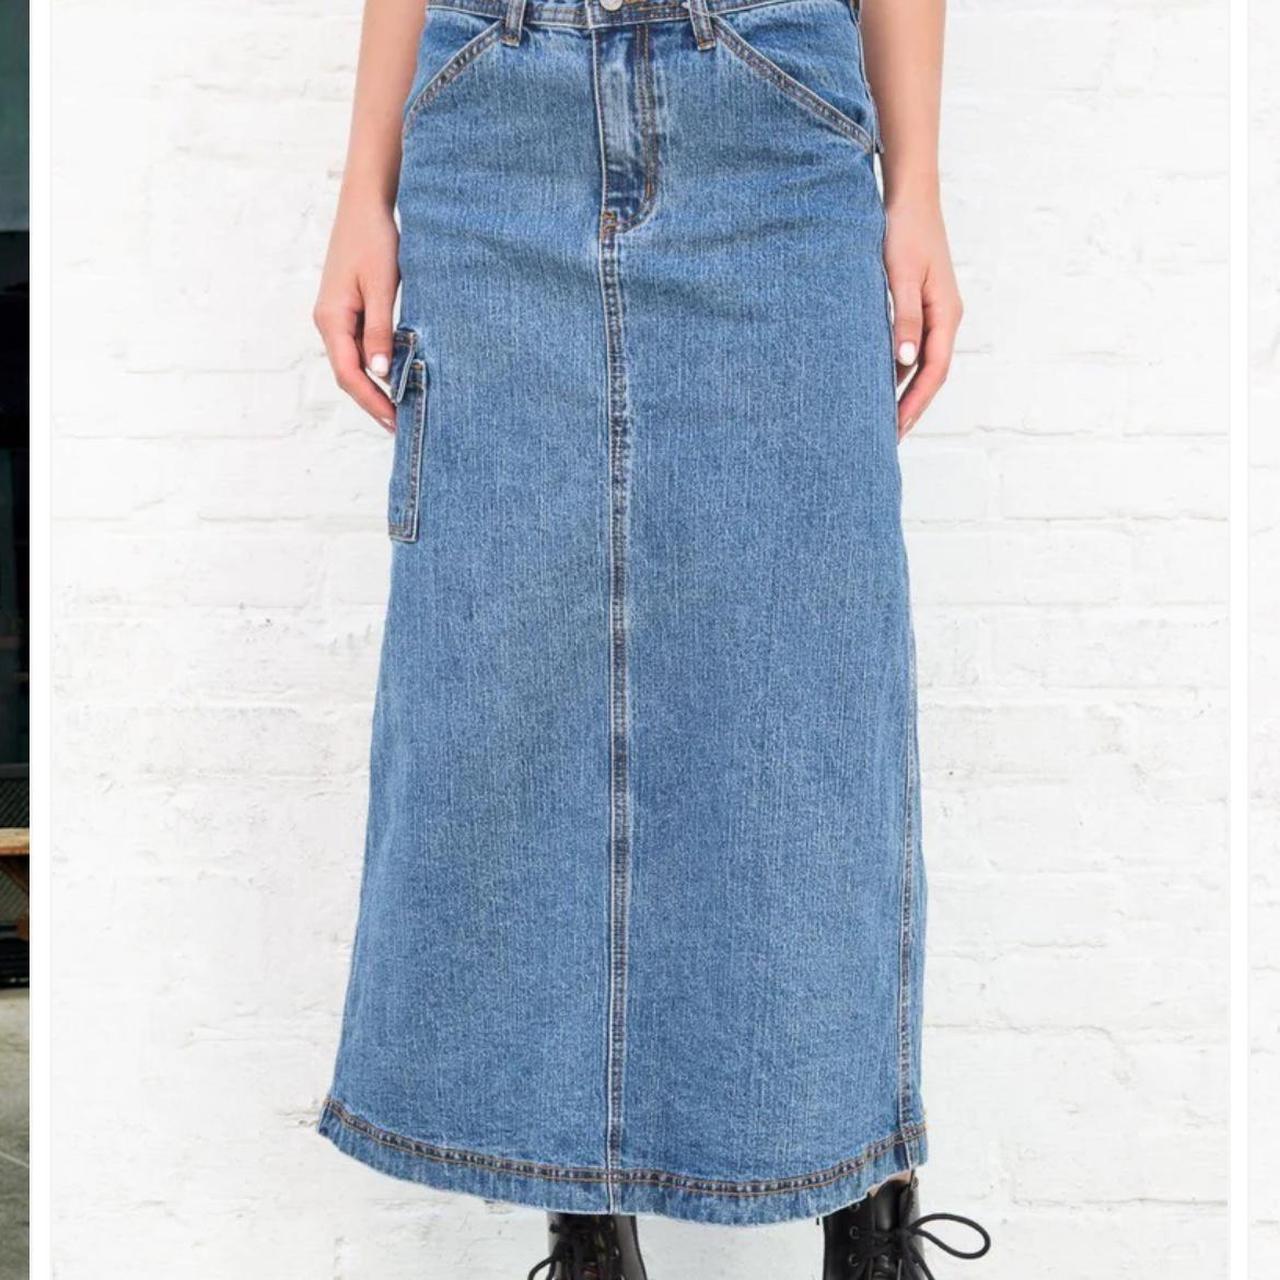 Brandy Melville Kenzie 90’s Denim Skirt Mid length... - Depop